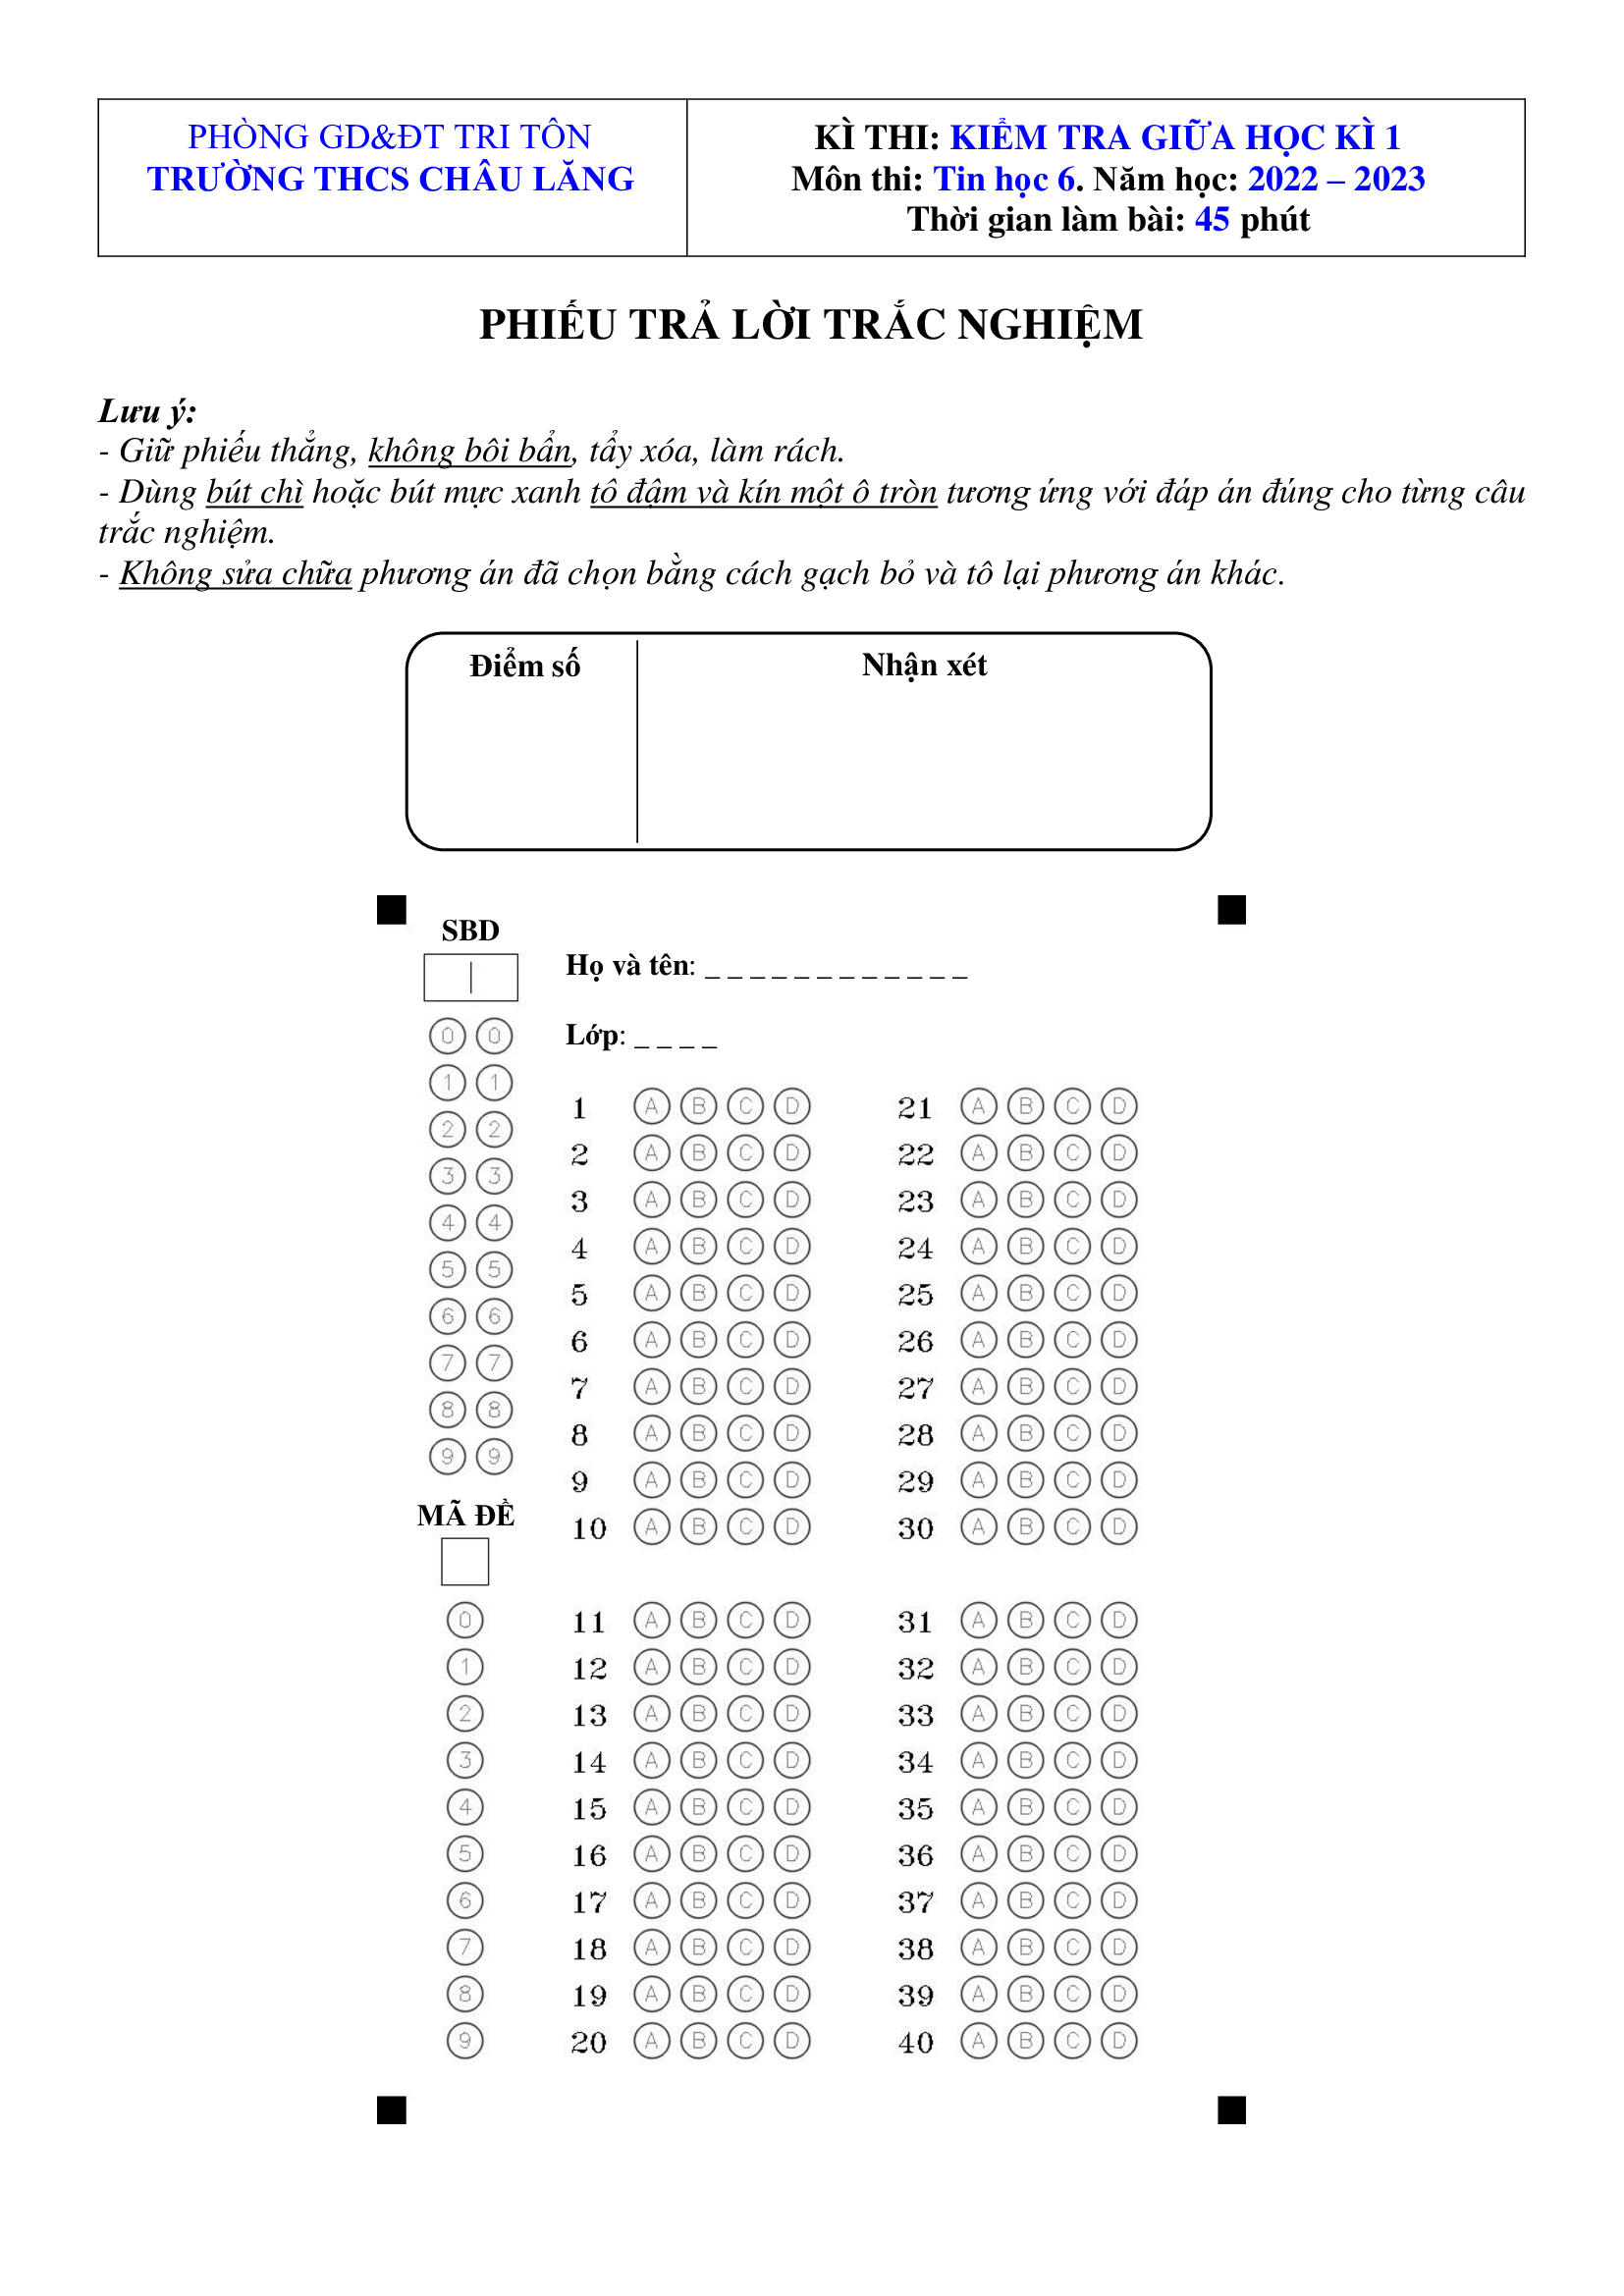 Phiếu chấm mẫu 40 câu - Form 40 (A5) (Sử dụng giấy A4)